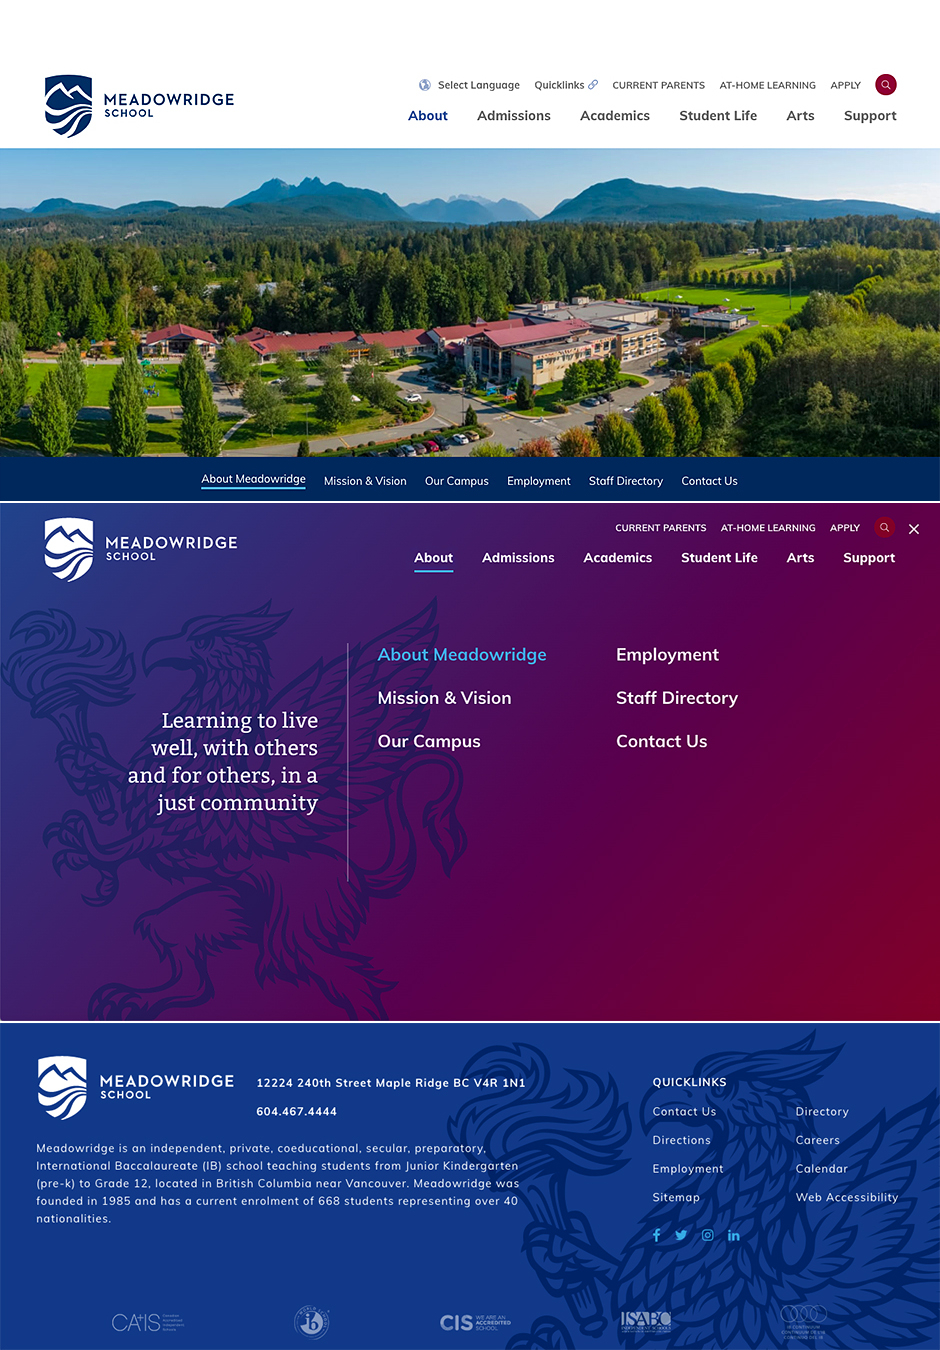 Crest redesign insitu, launch website design by Meadowridge School